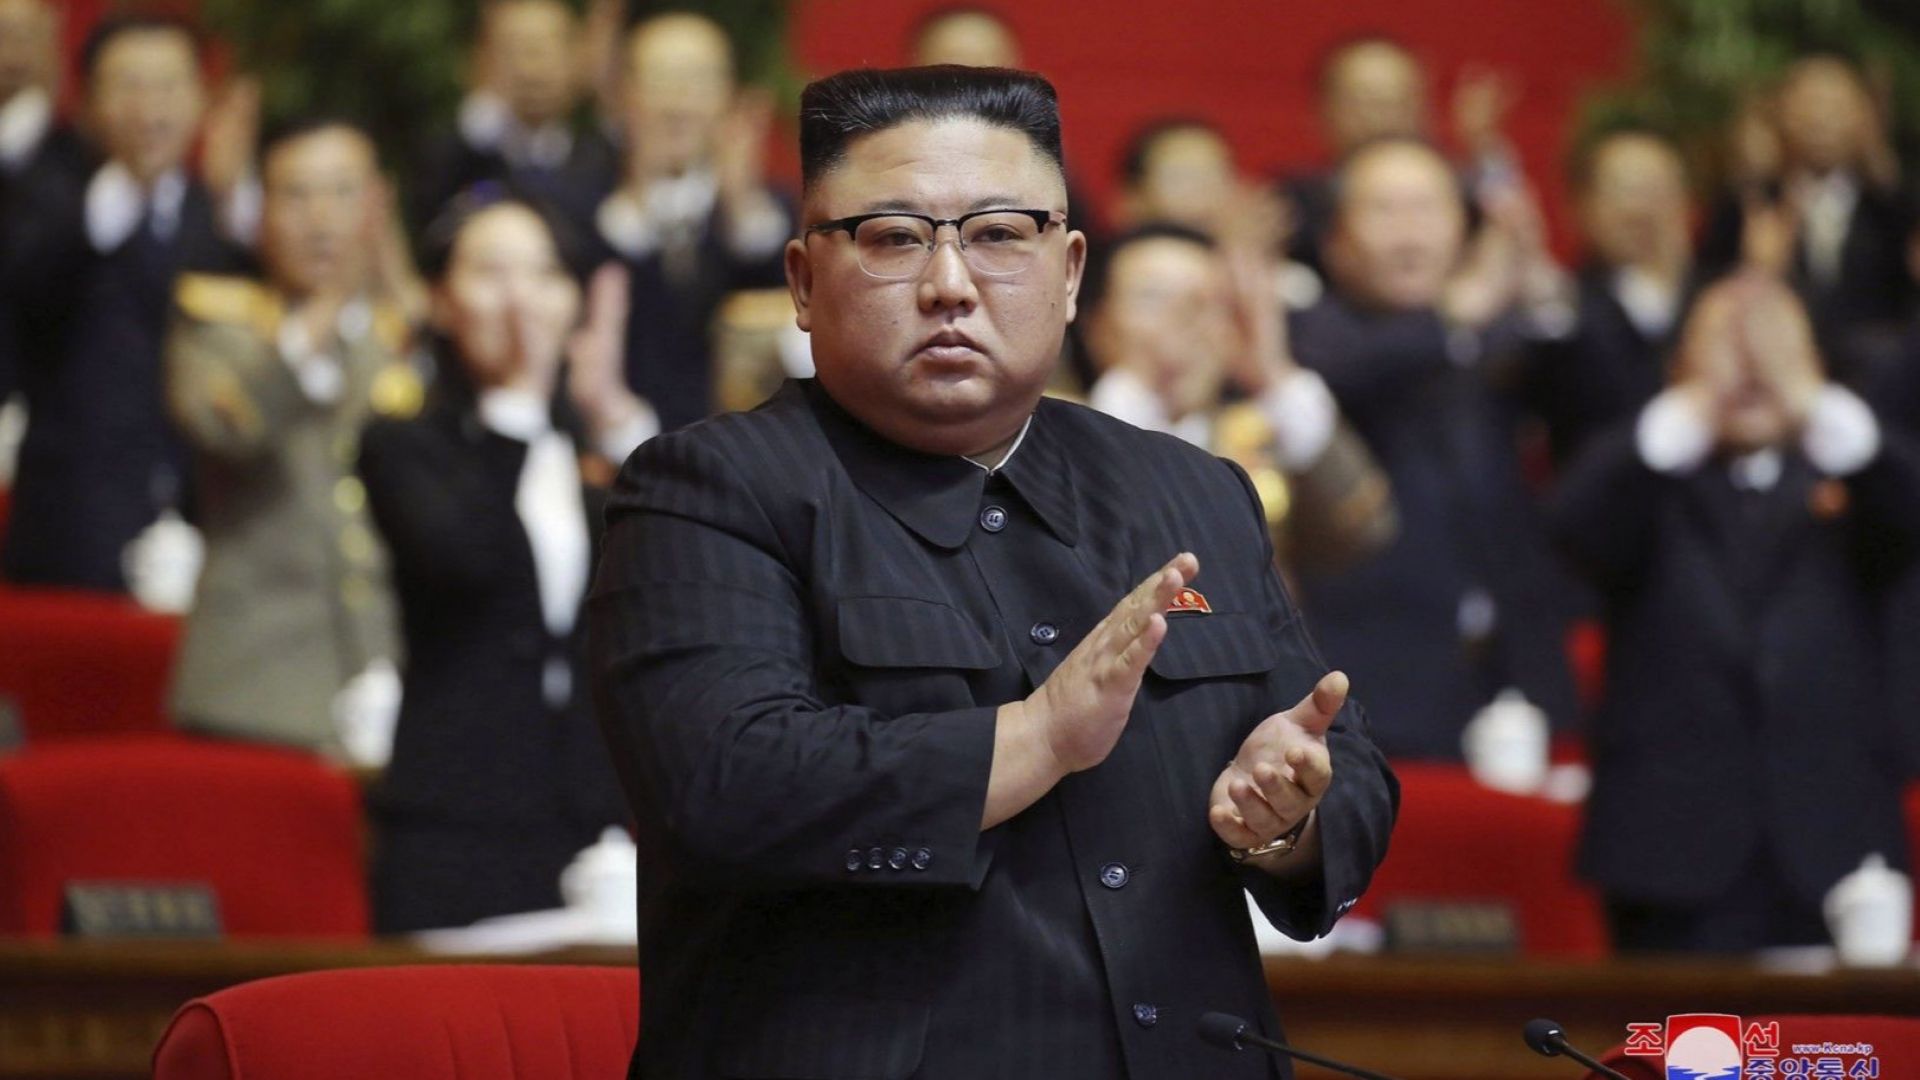 Северна Корея въведе поста първи секретар, къде е Ким Чен-ун?